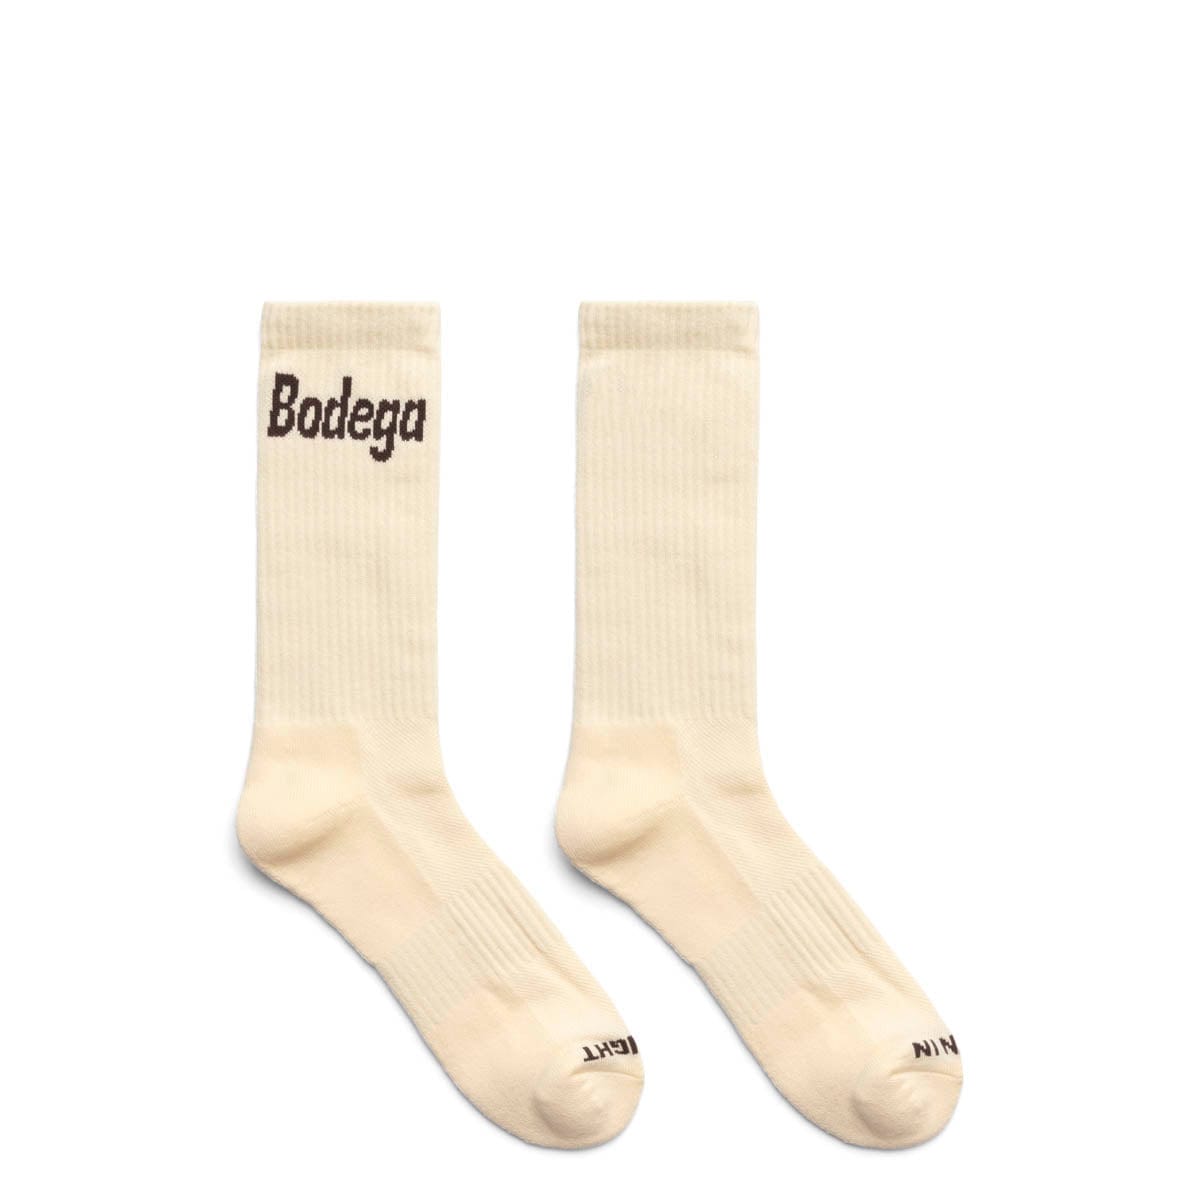 Bodega Socks CREAM / O/S LOGO SOCK